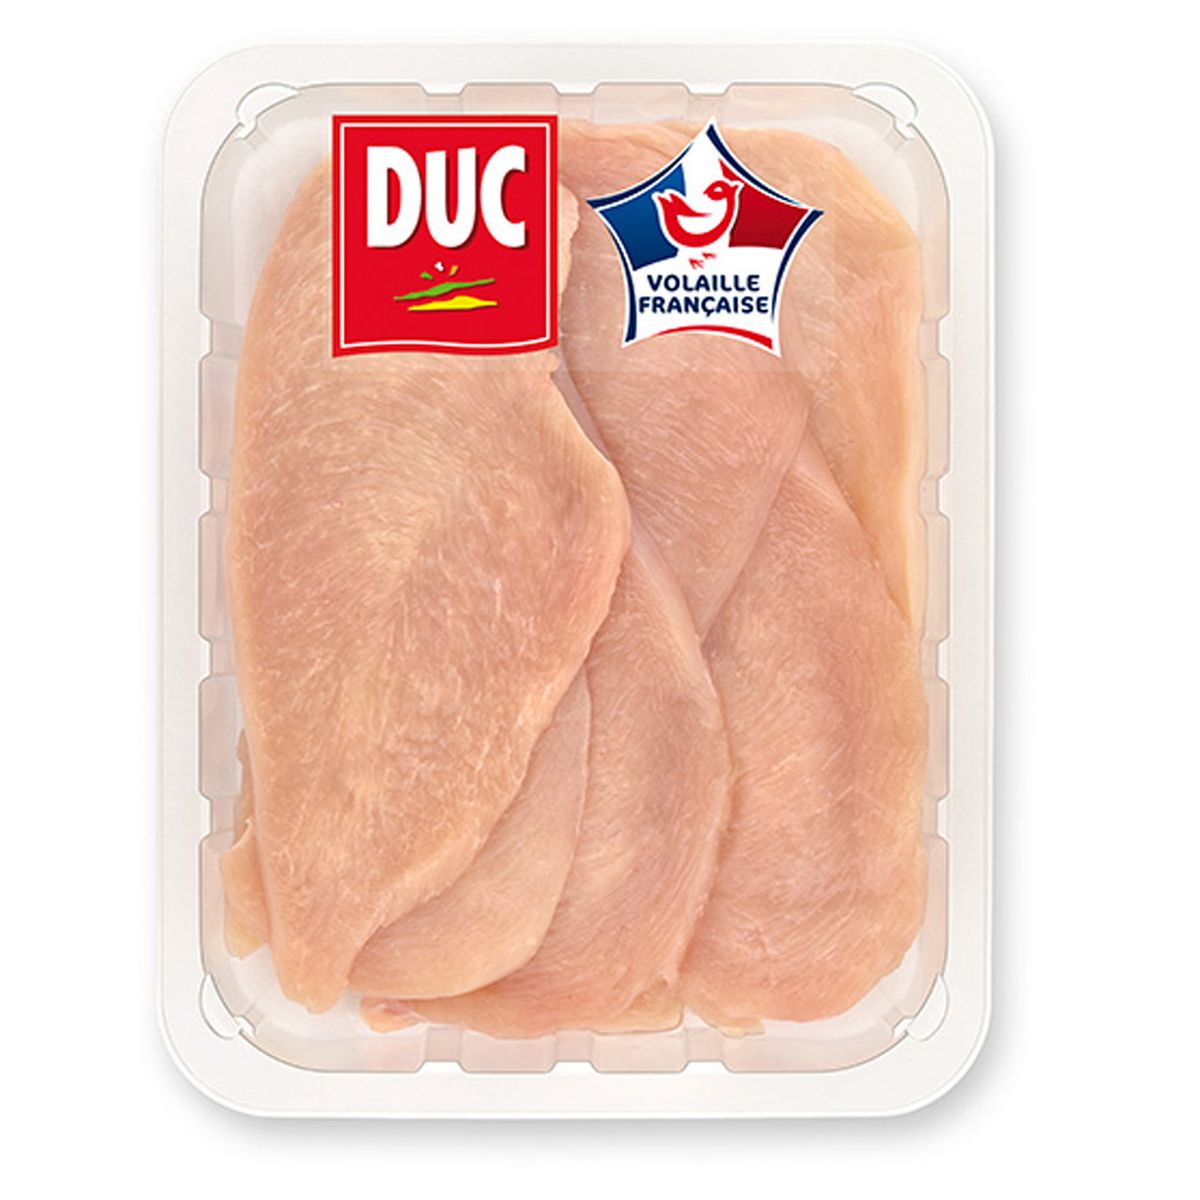 DUC Filets de poulet 600g